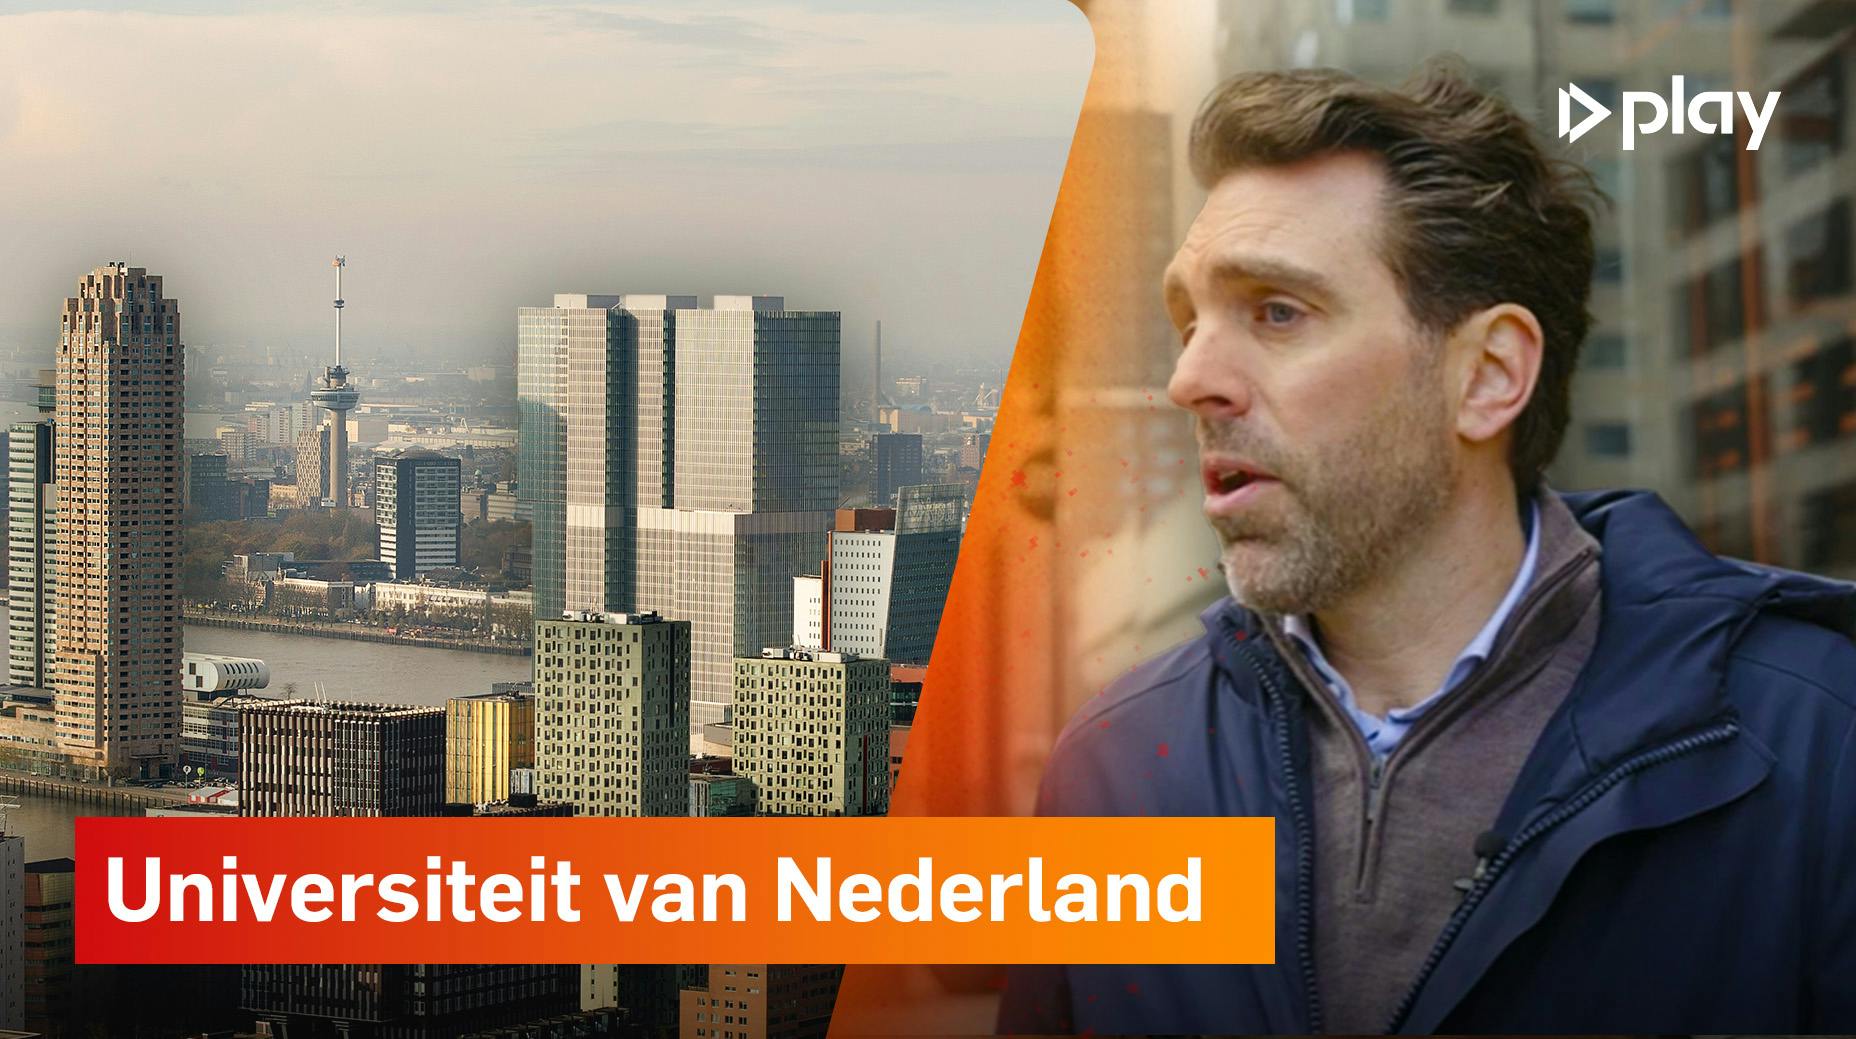 Woningtekort in Nederland: is hoogbouw de oplossing?